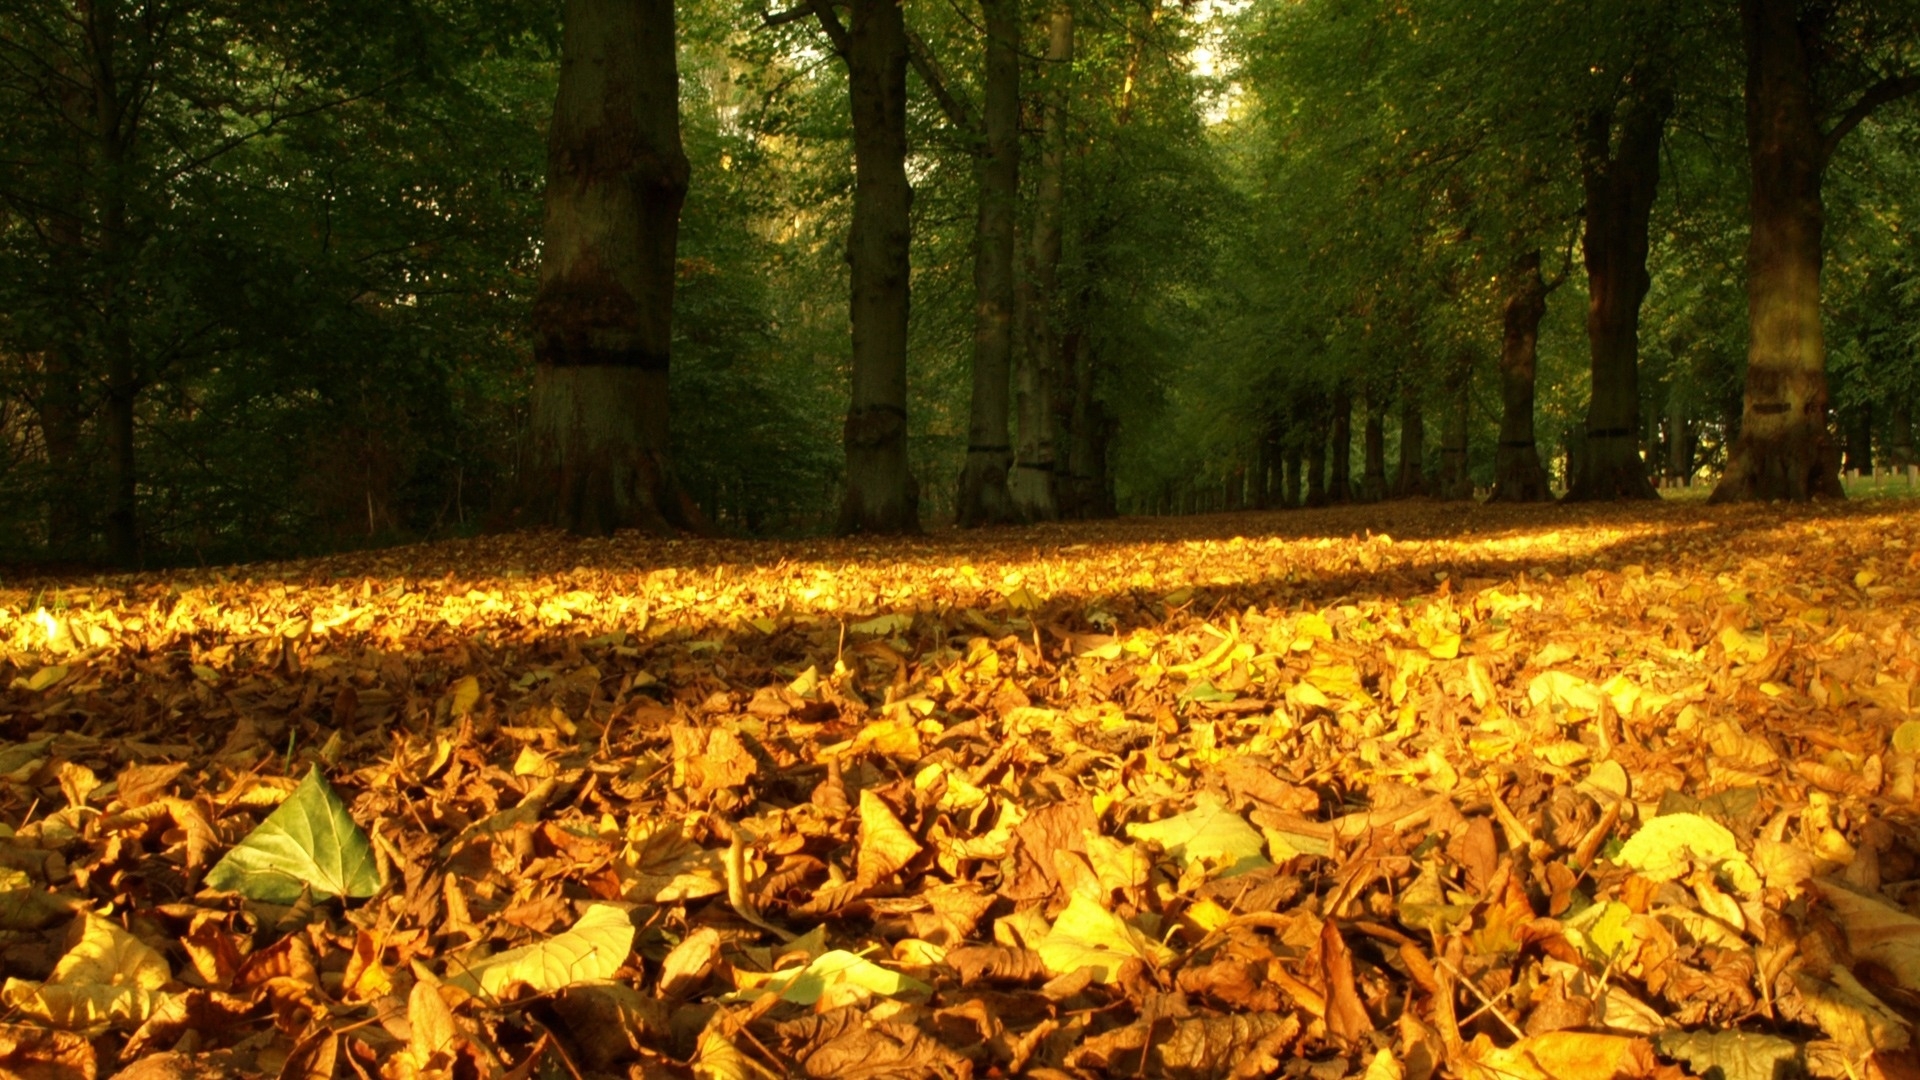 Скачать обои бесплатно Деревья, Листья, Пейзаж, Осень картинка на рабочий стол ПК